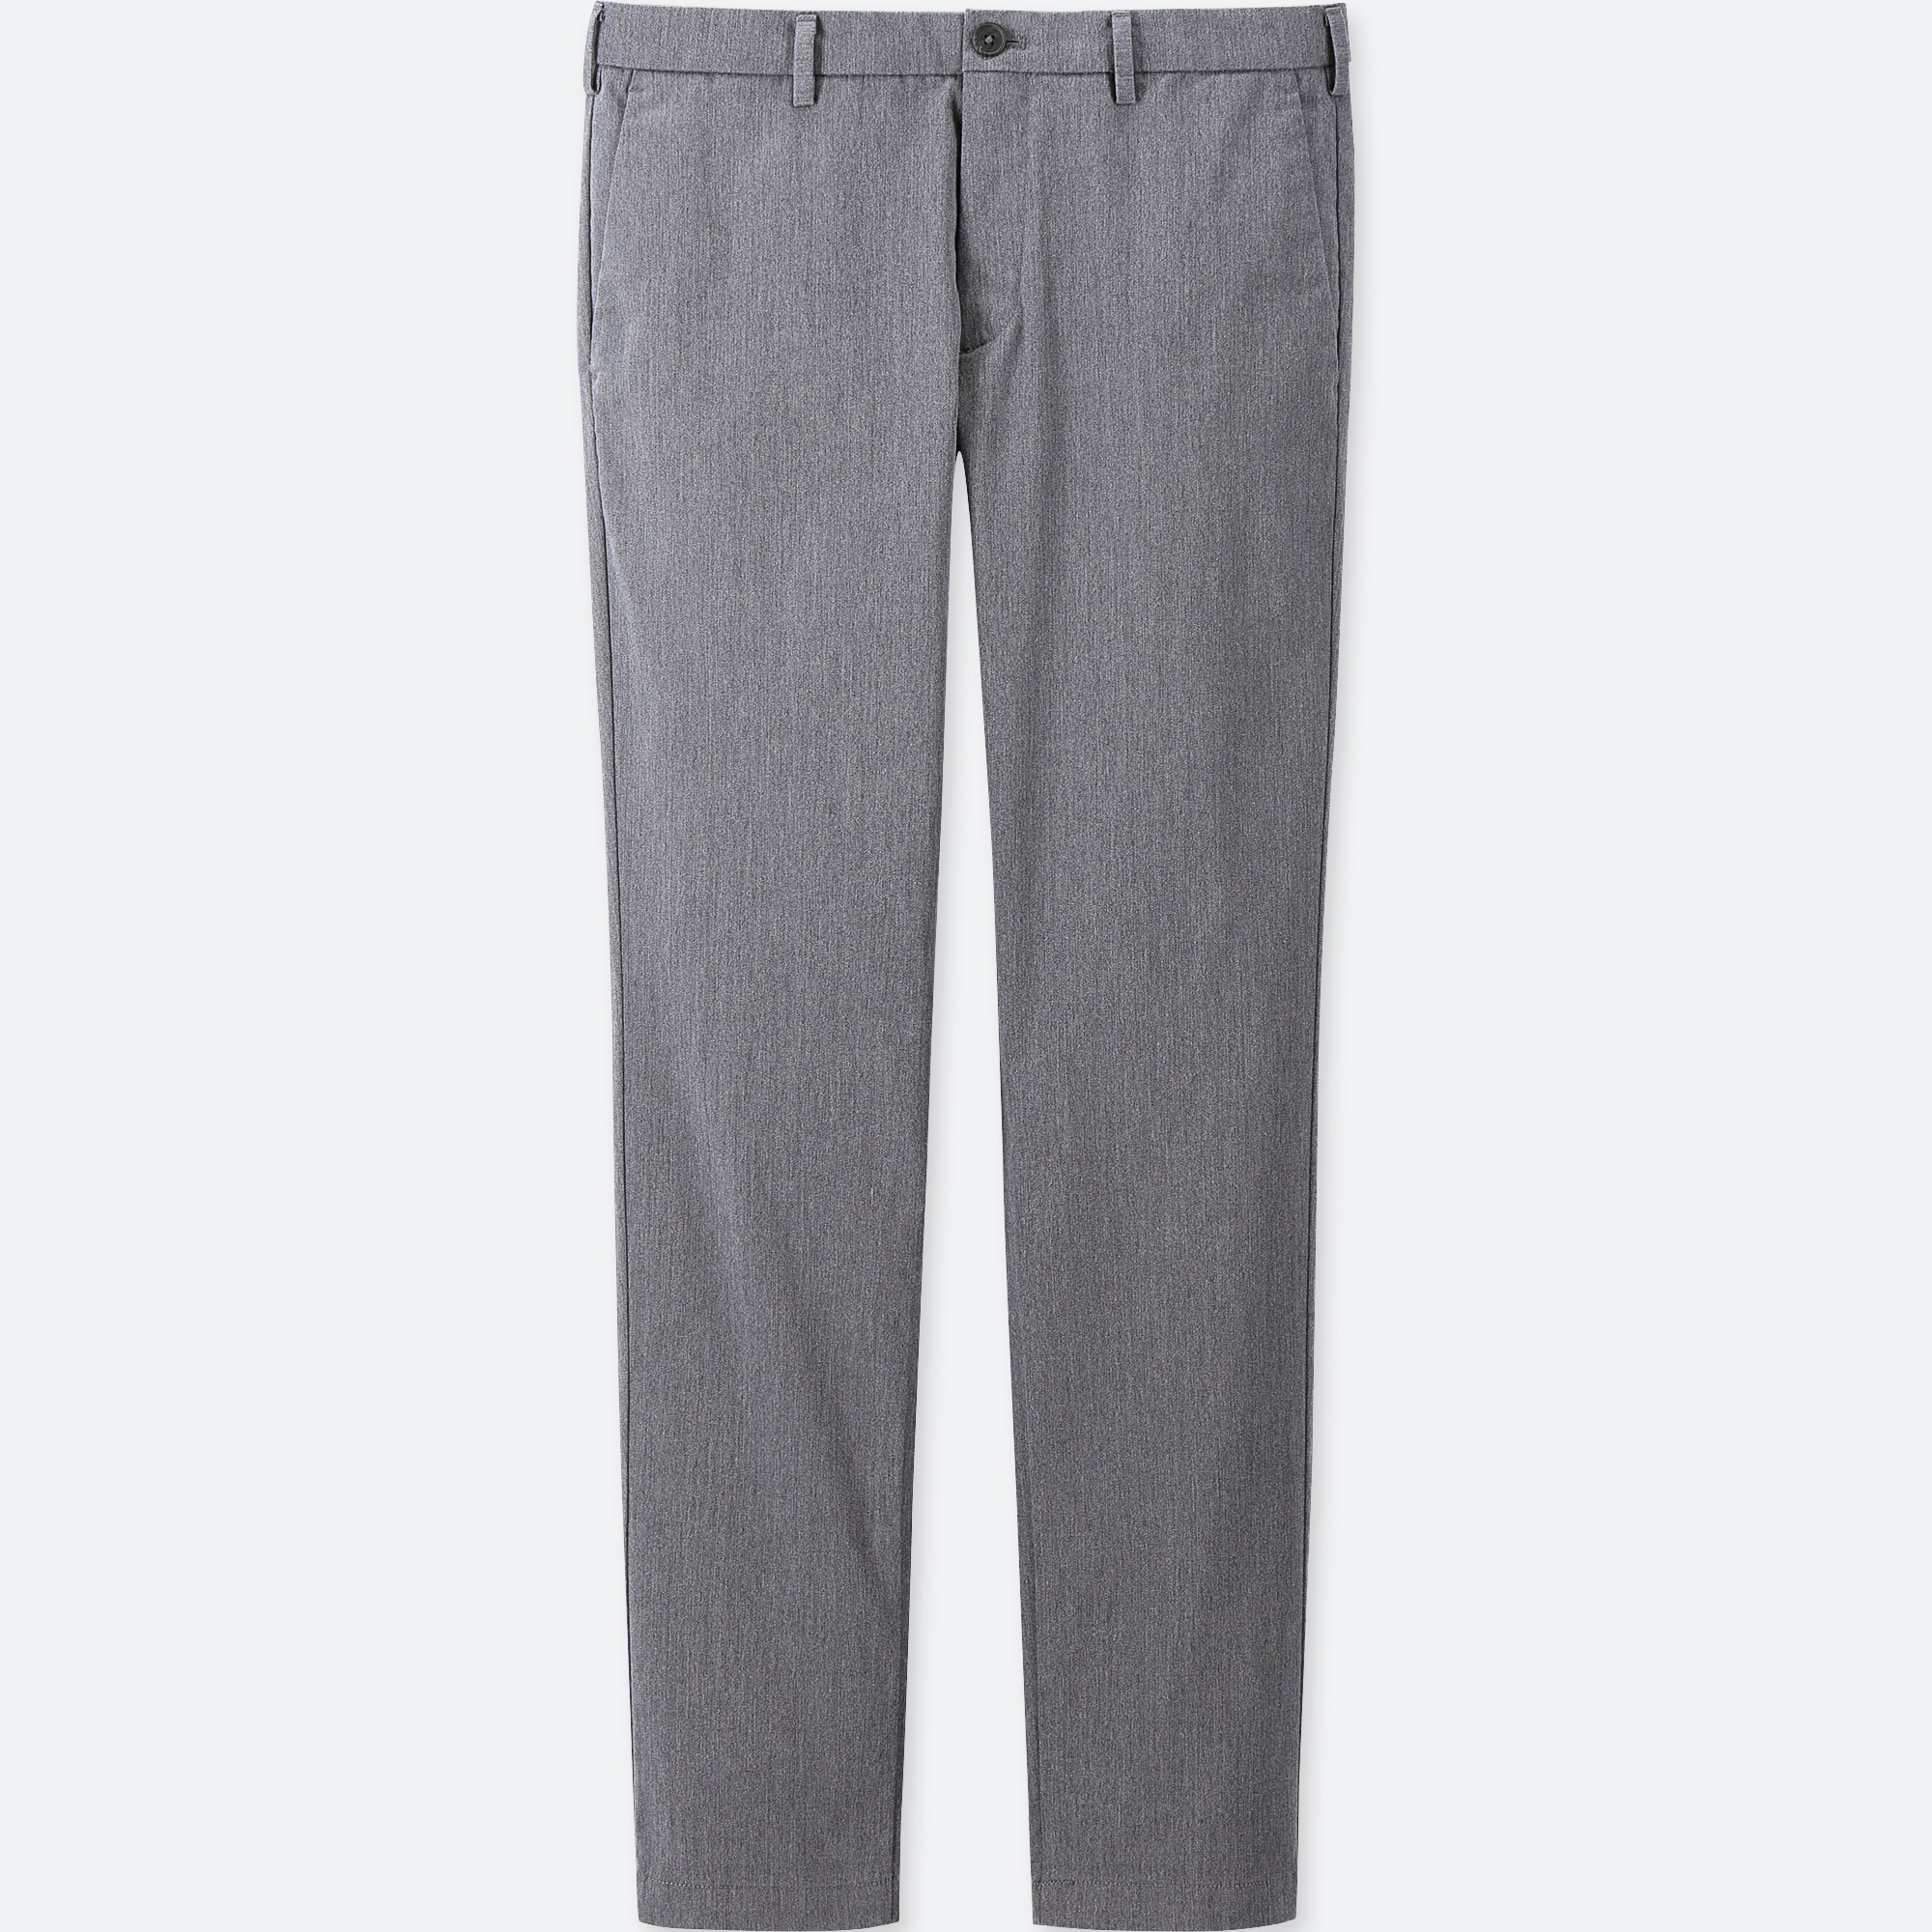 dark gray chino pants